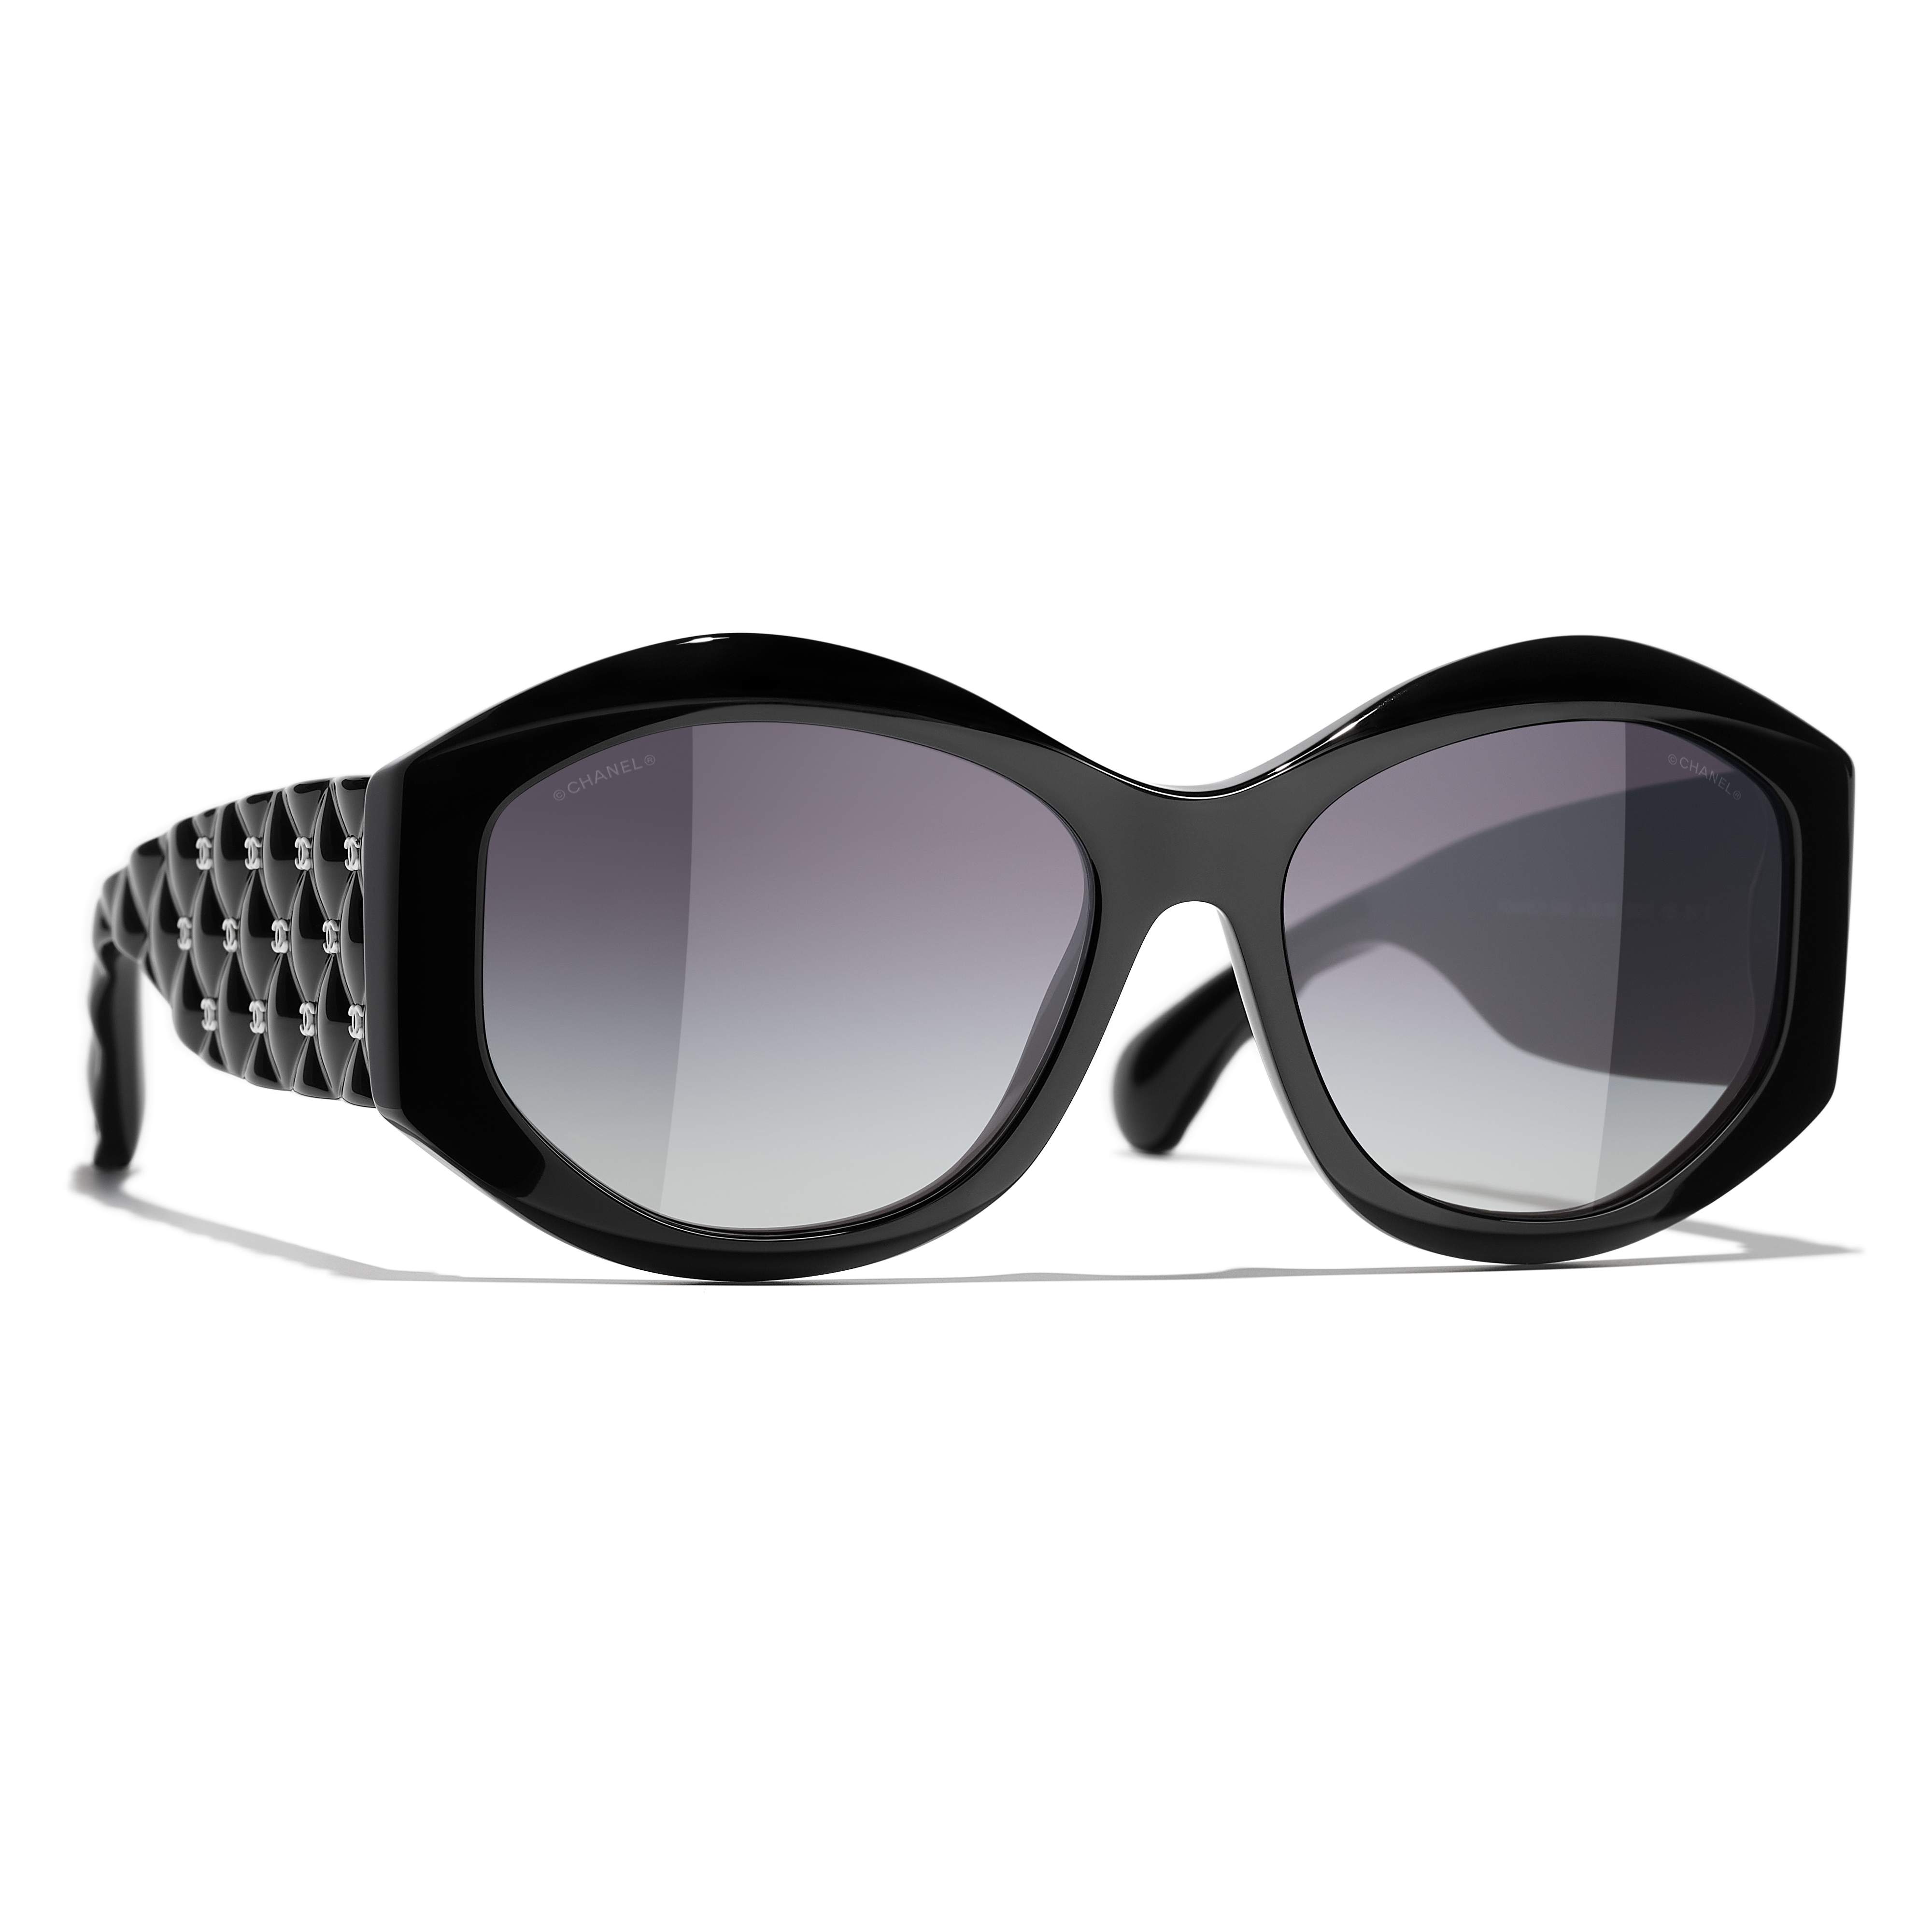 Sunglasses CHANEL CH5486 C760/S6 56-17 Black in stock, Price 316,67 €